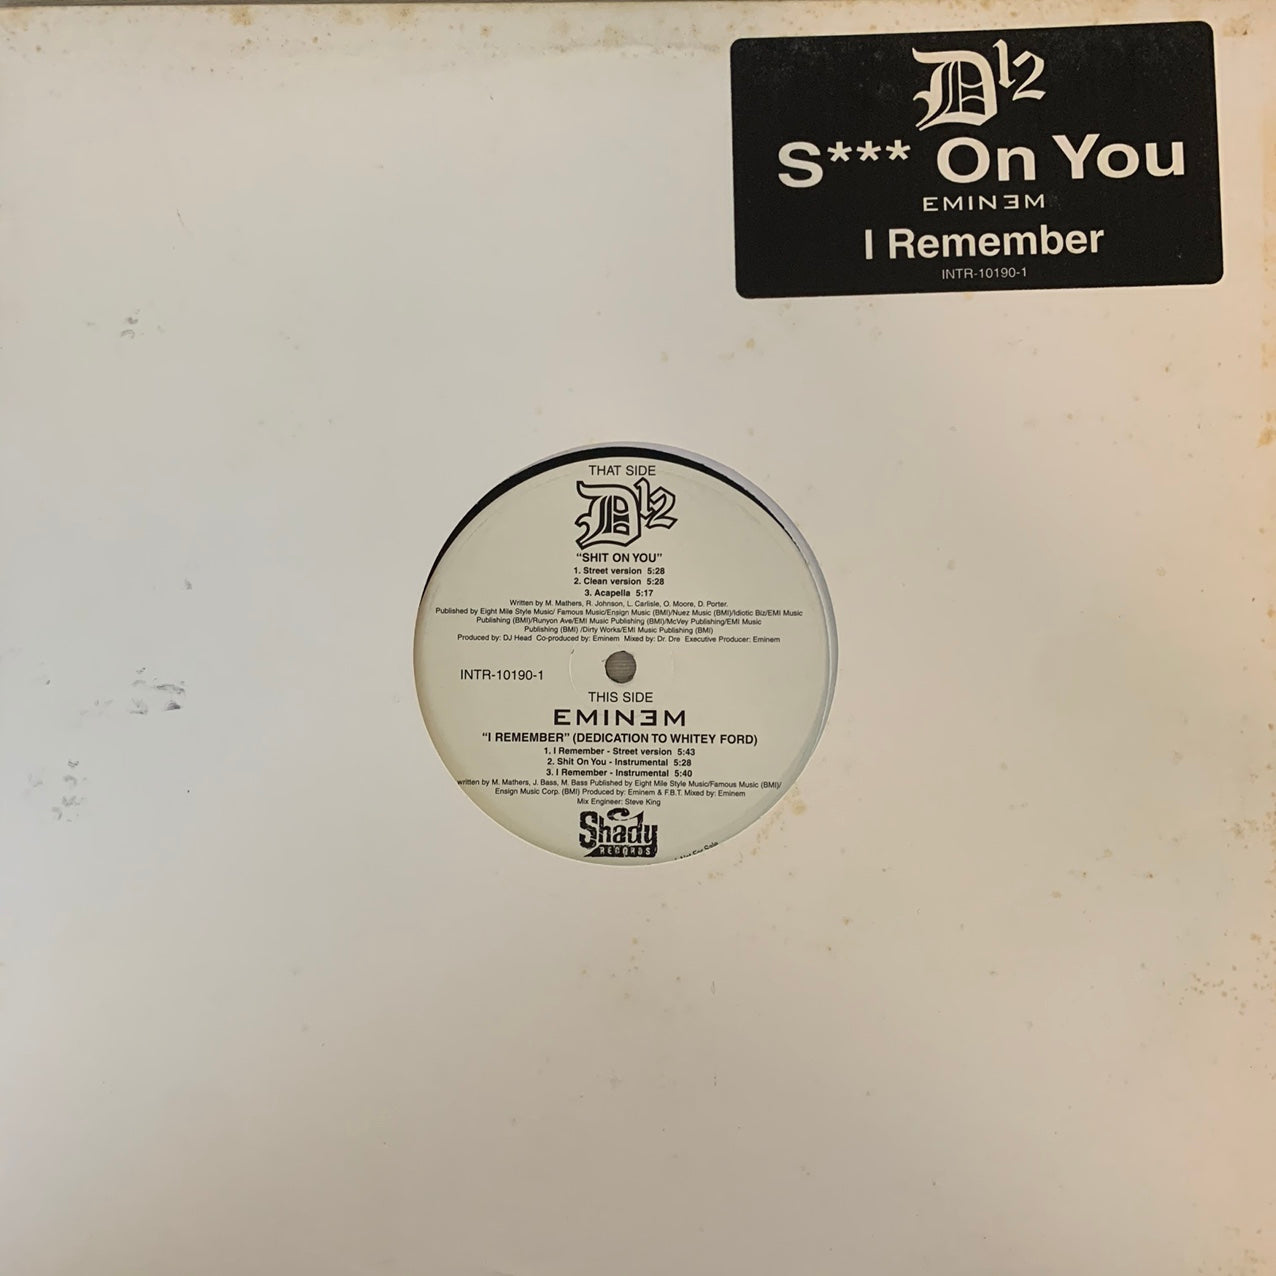 D12 “Shit On You” / Eminem “I Remember” 6 version 12inch Vinyl